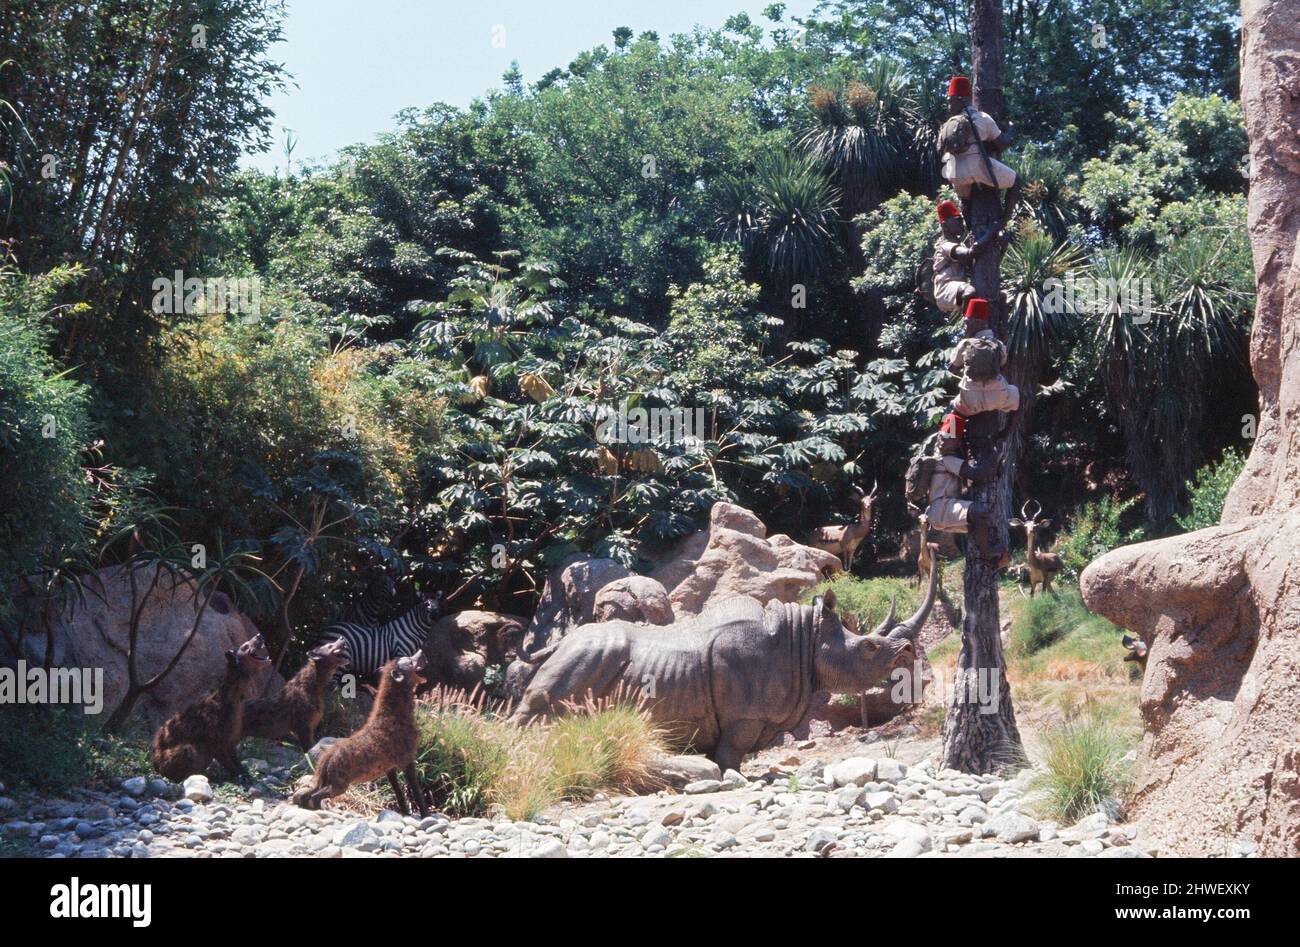 Szenen im Disneyland Themenpark in Anaheim, Kalifornien, USA. Dschungelszenen mit elektronisch betriebenen Tieren. Juni 1970. Stockfoto